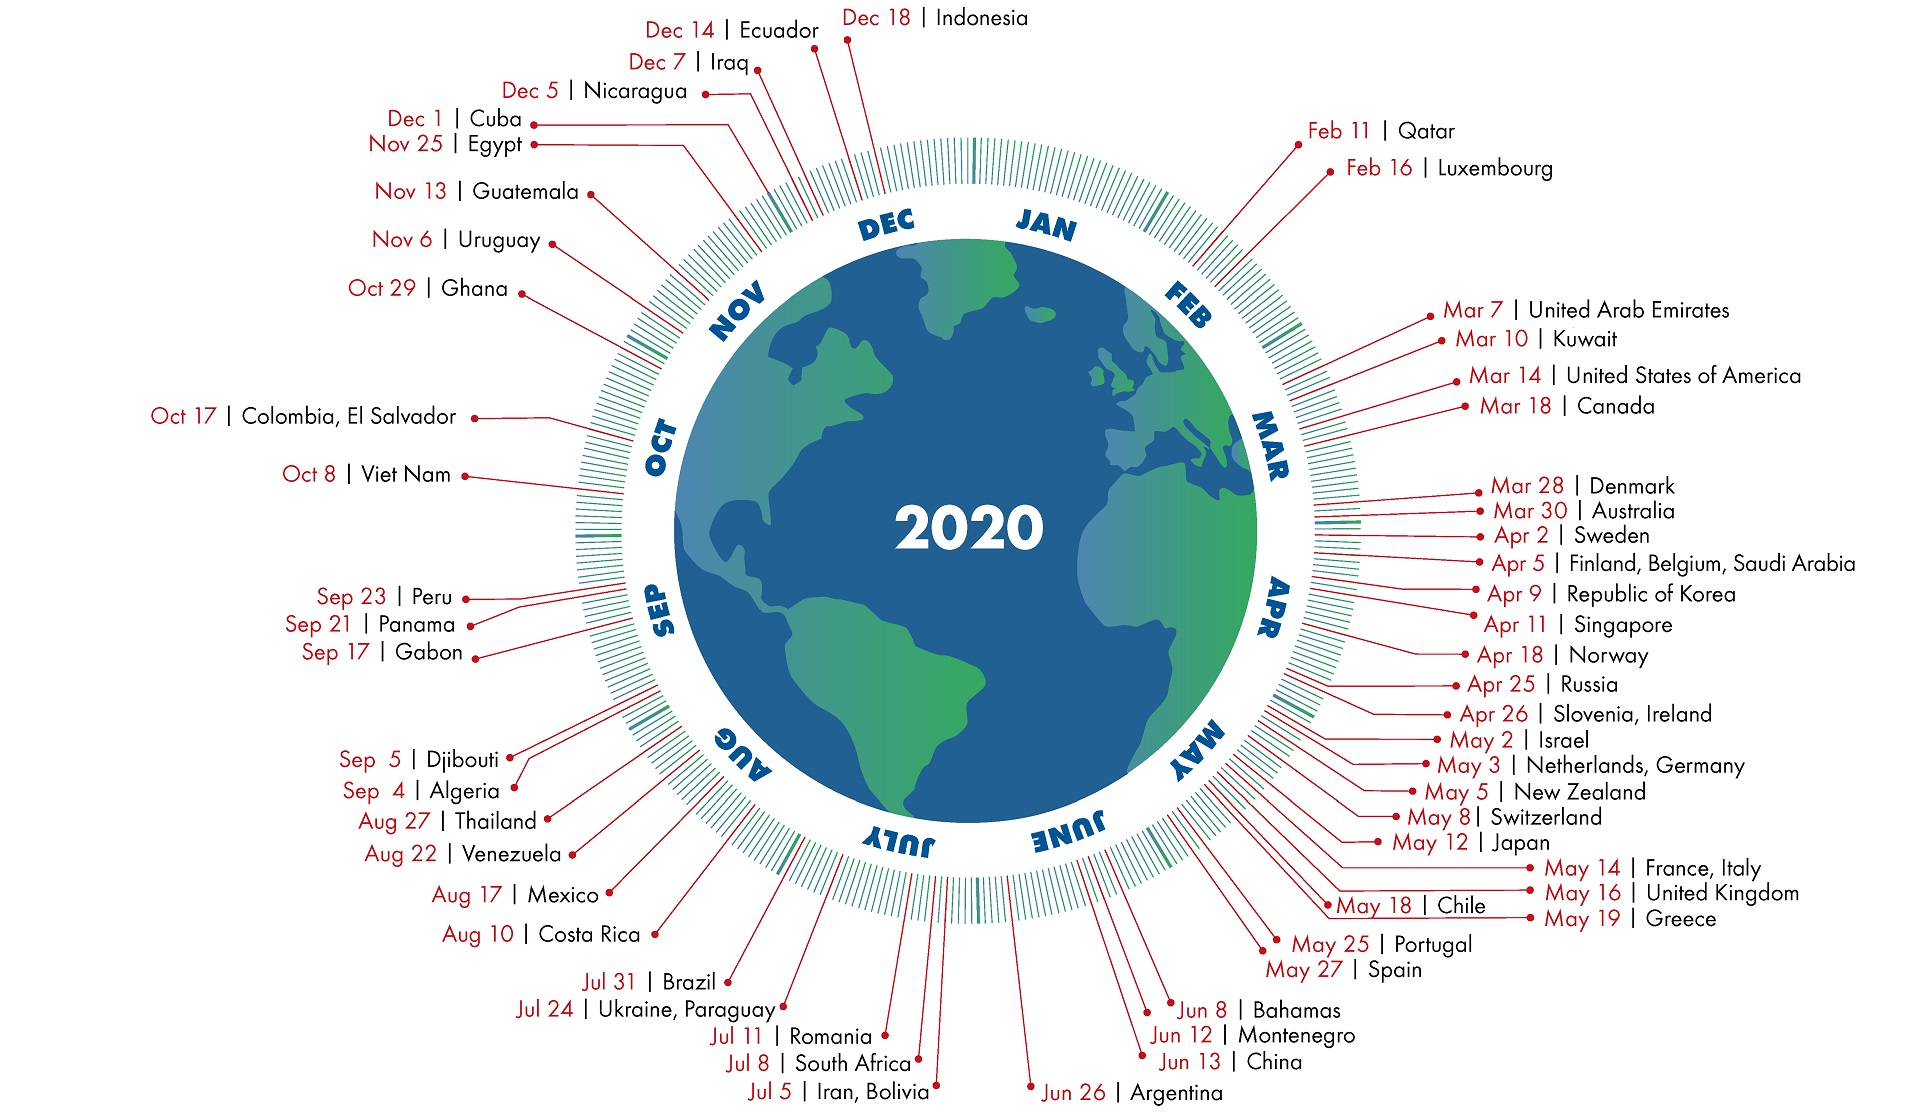 Global Footprint Network calcula cuándo será el Día del Exceso de la Tierra para cada país.